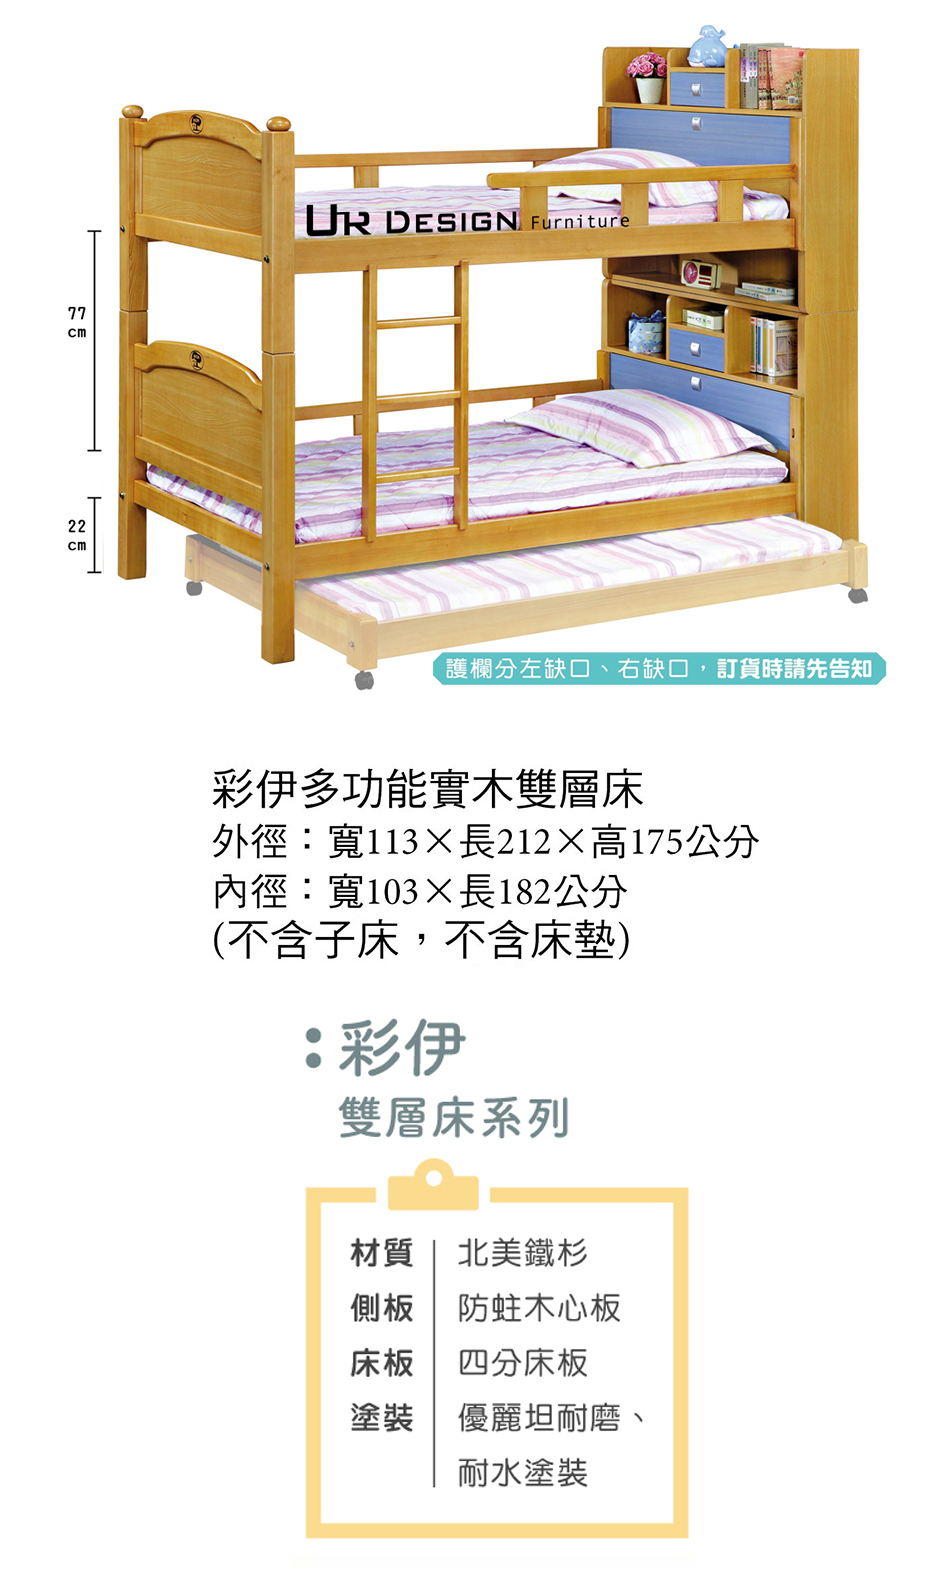 日式彩伊多功能實木雙層床